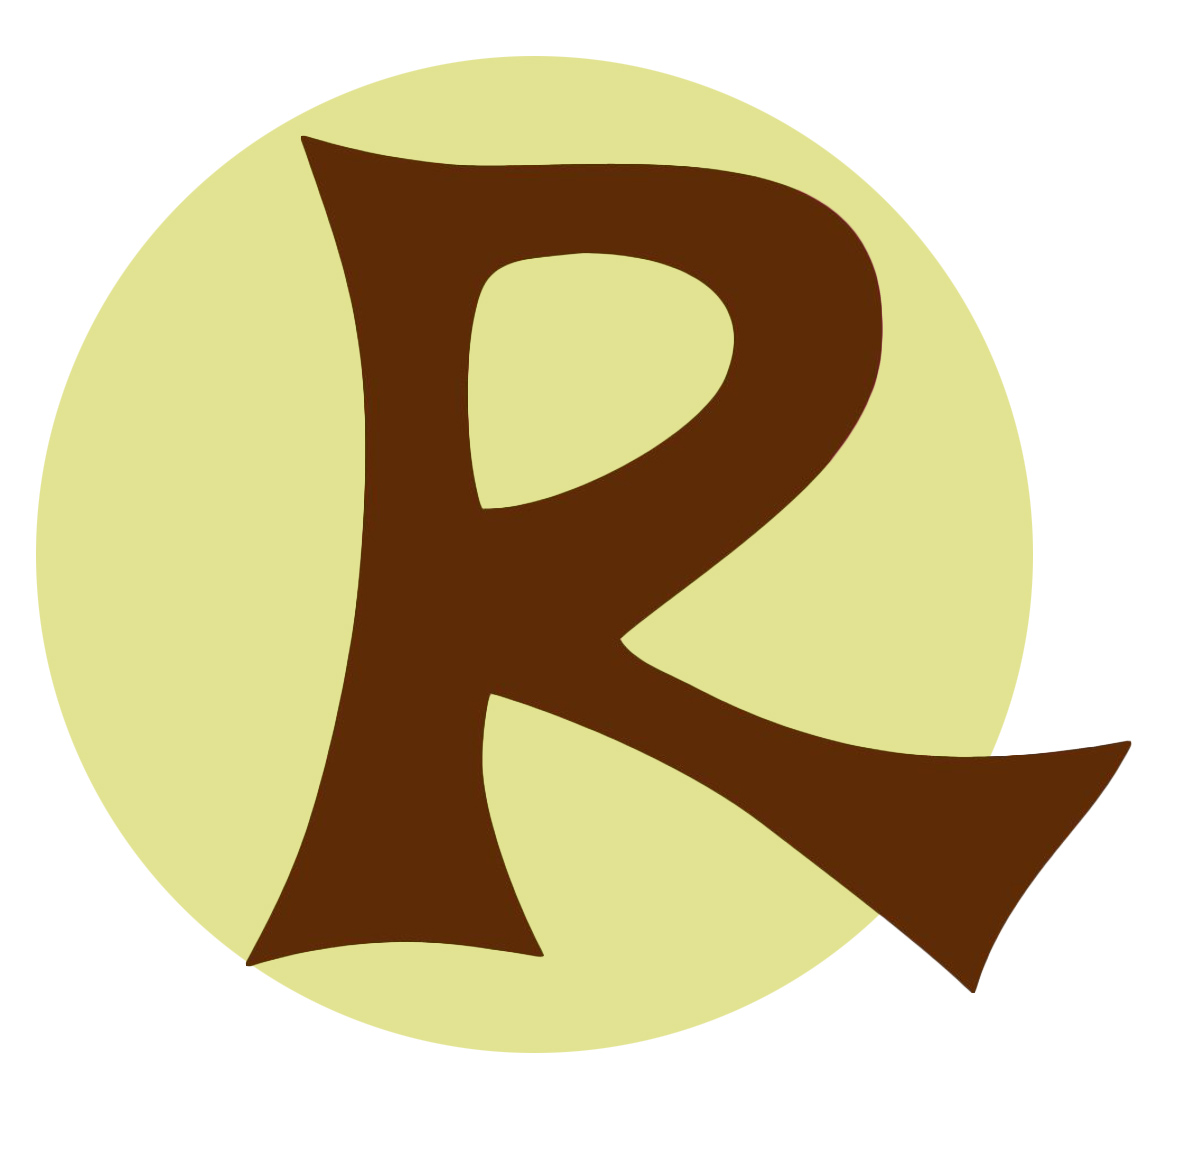 Rug Rats Inc review